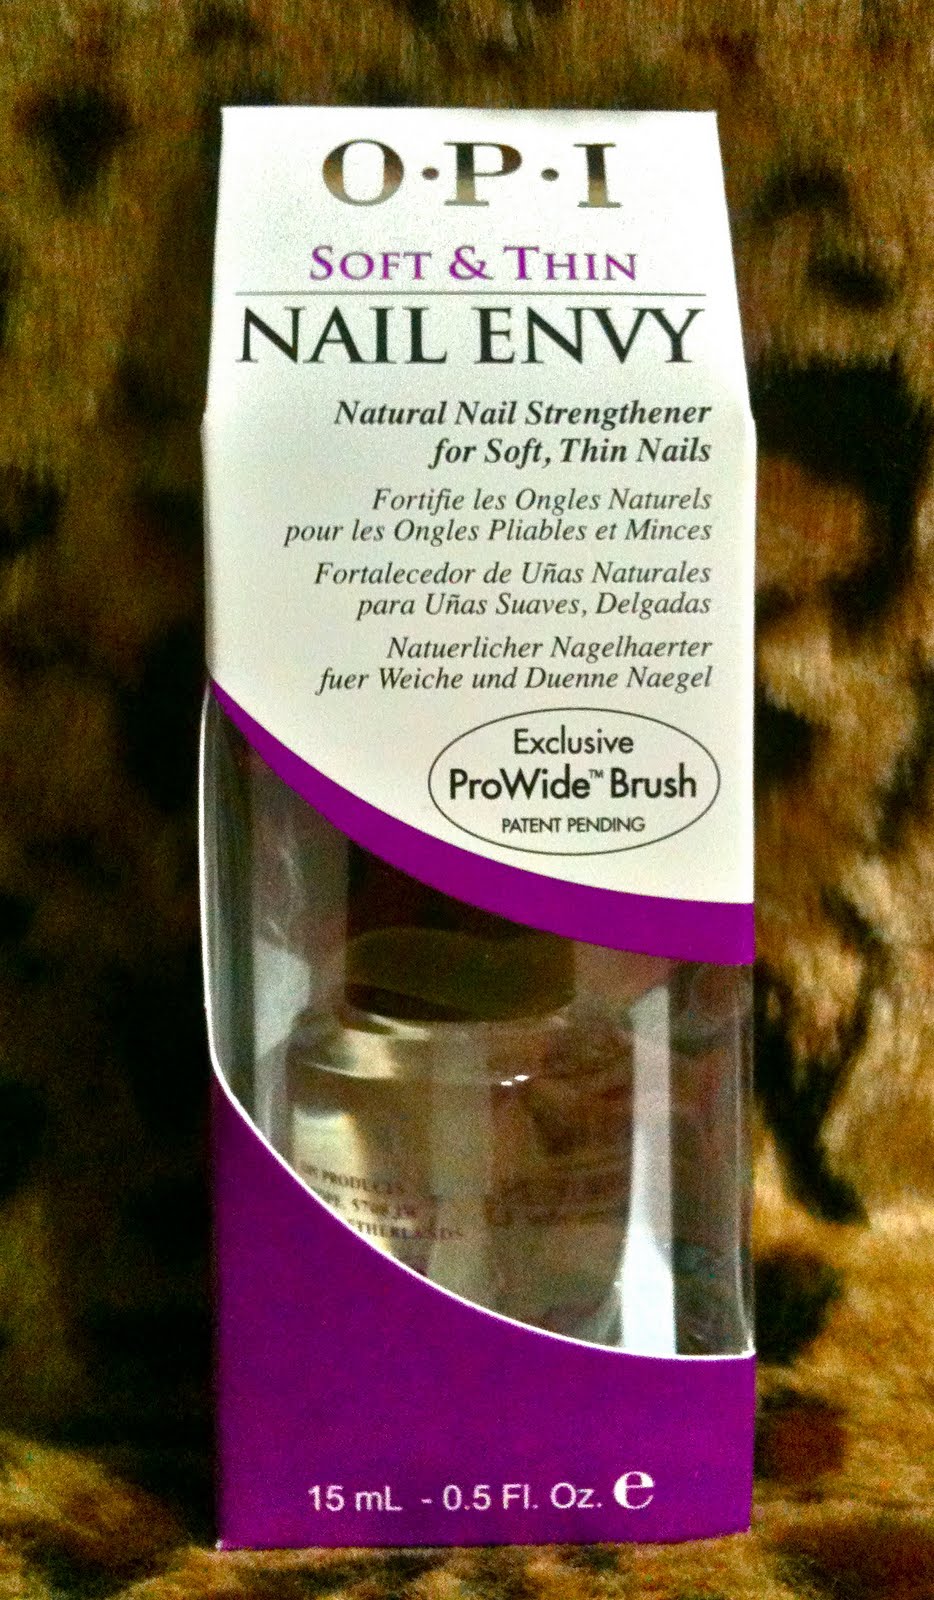 O.P.I Nail Envy Natural Nail Strengthener for Soft Thin Nails, SGD42